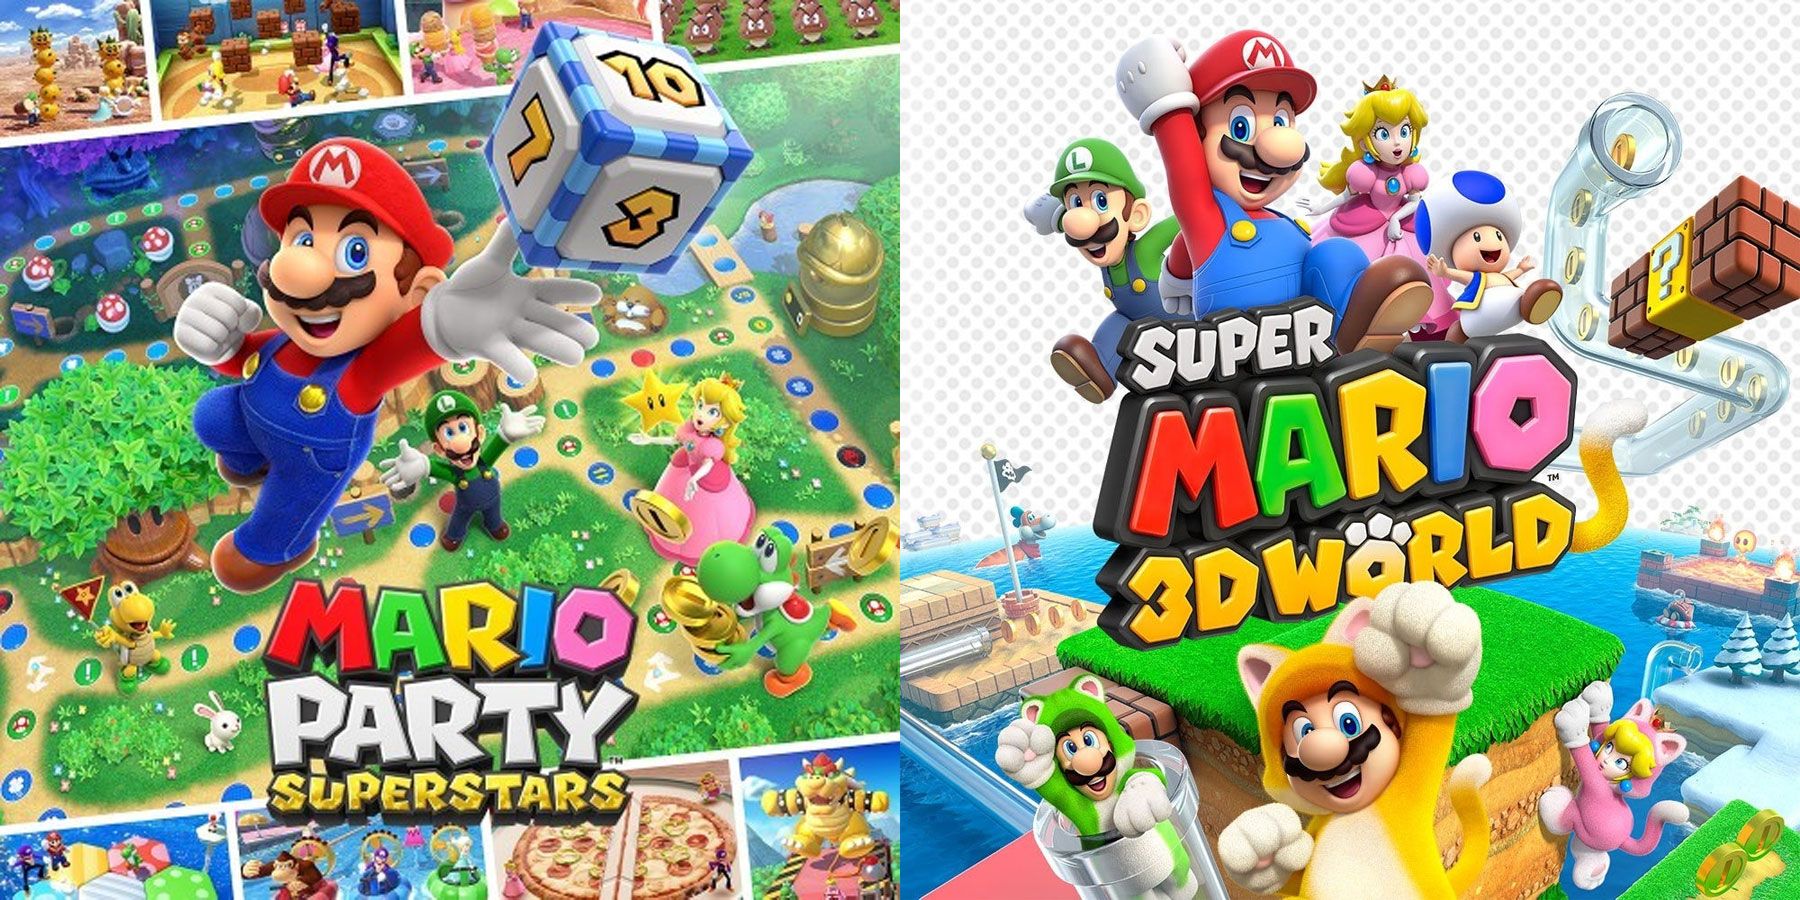 Mario Party Superstars Vs Super Mario Party